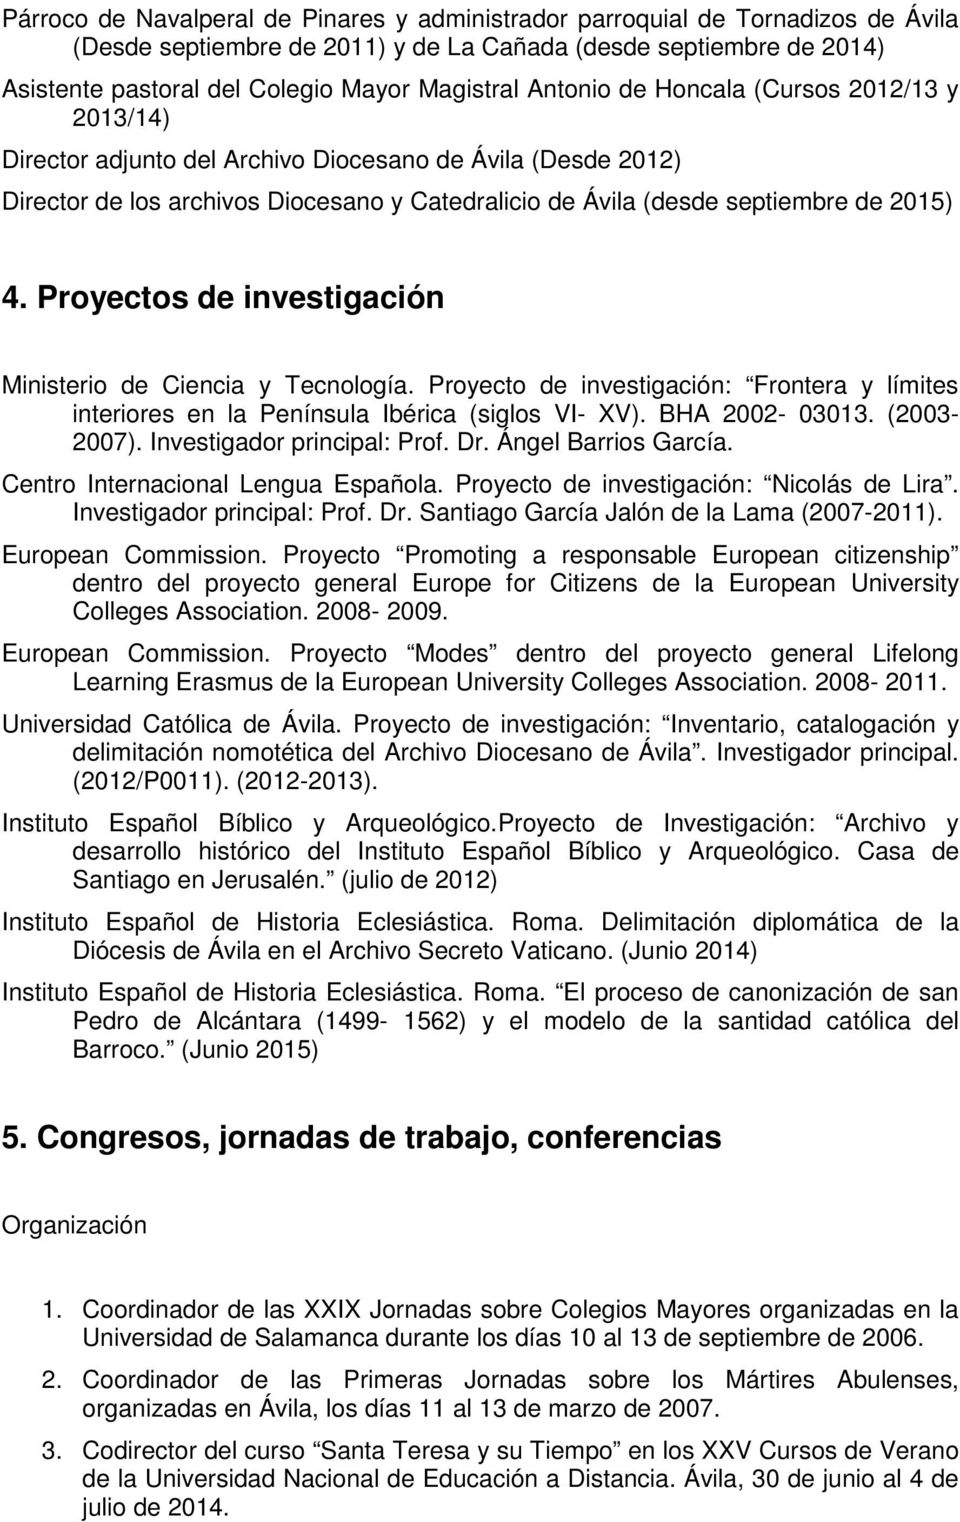 Proyectos de investigación Ministerio de Ciencia y Tecnología. Proyecto de investigación: Frontera y límites interiores en la Península Ibérica (siglos VI- XV). BHA 2002-03013. (2003-2007).